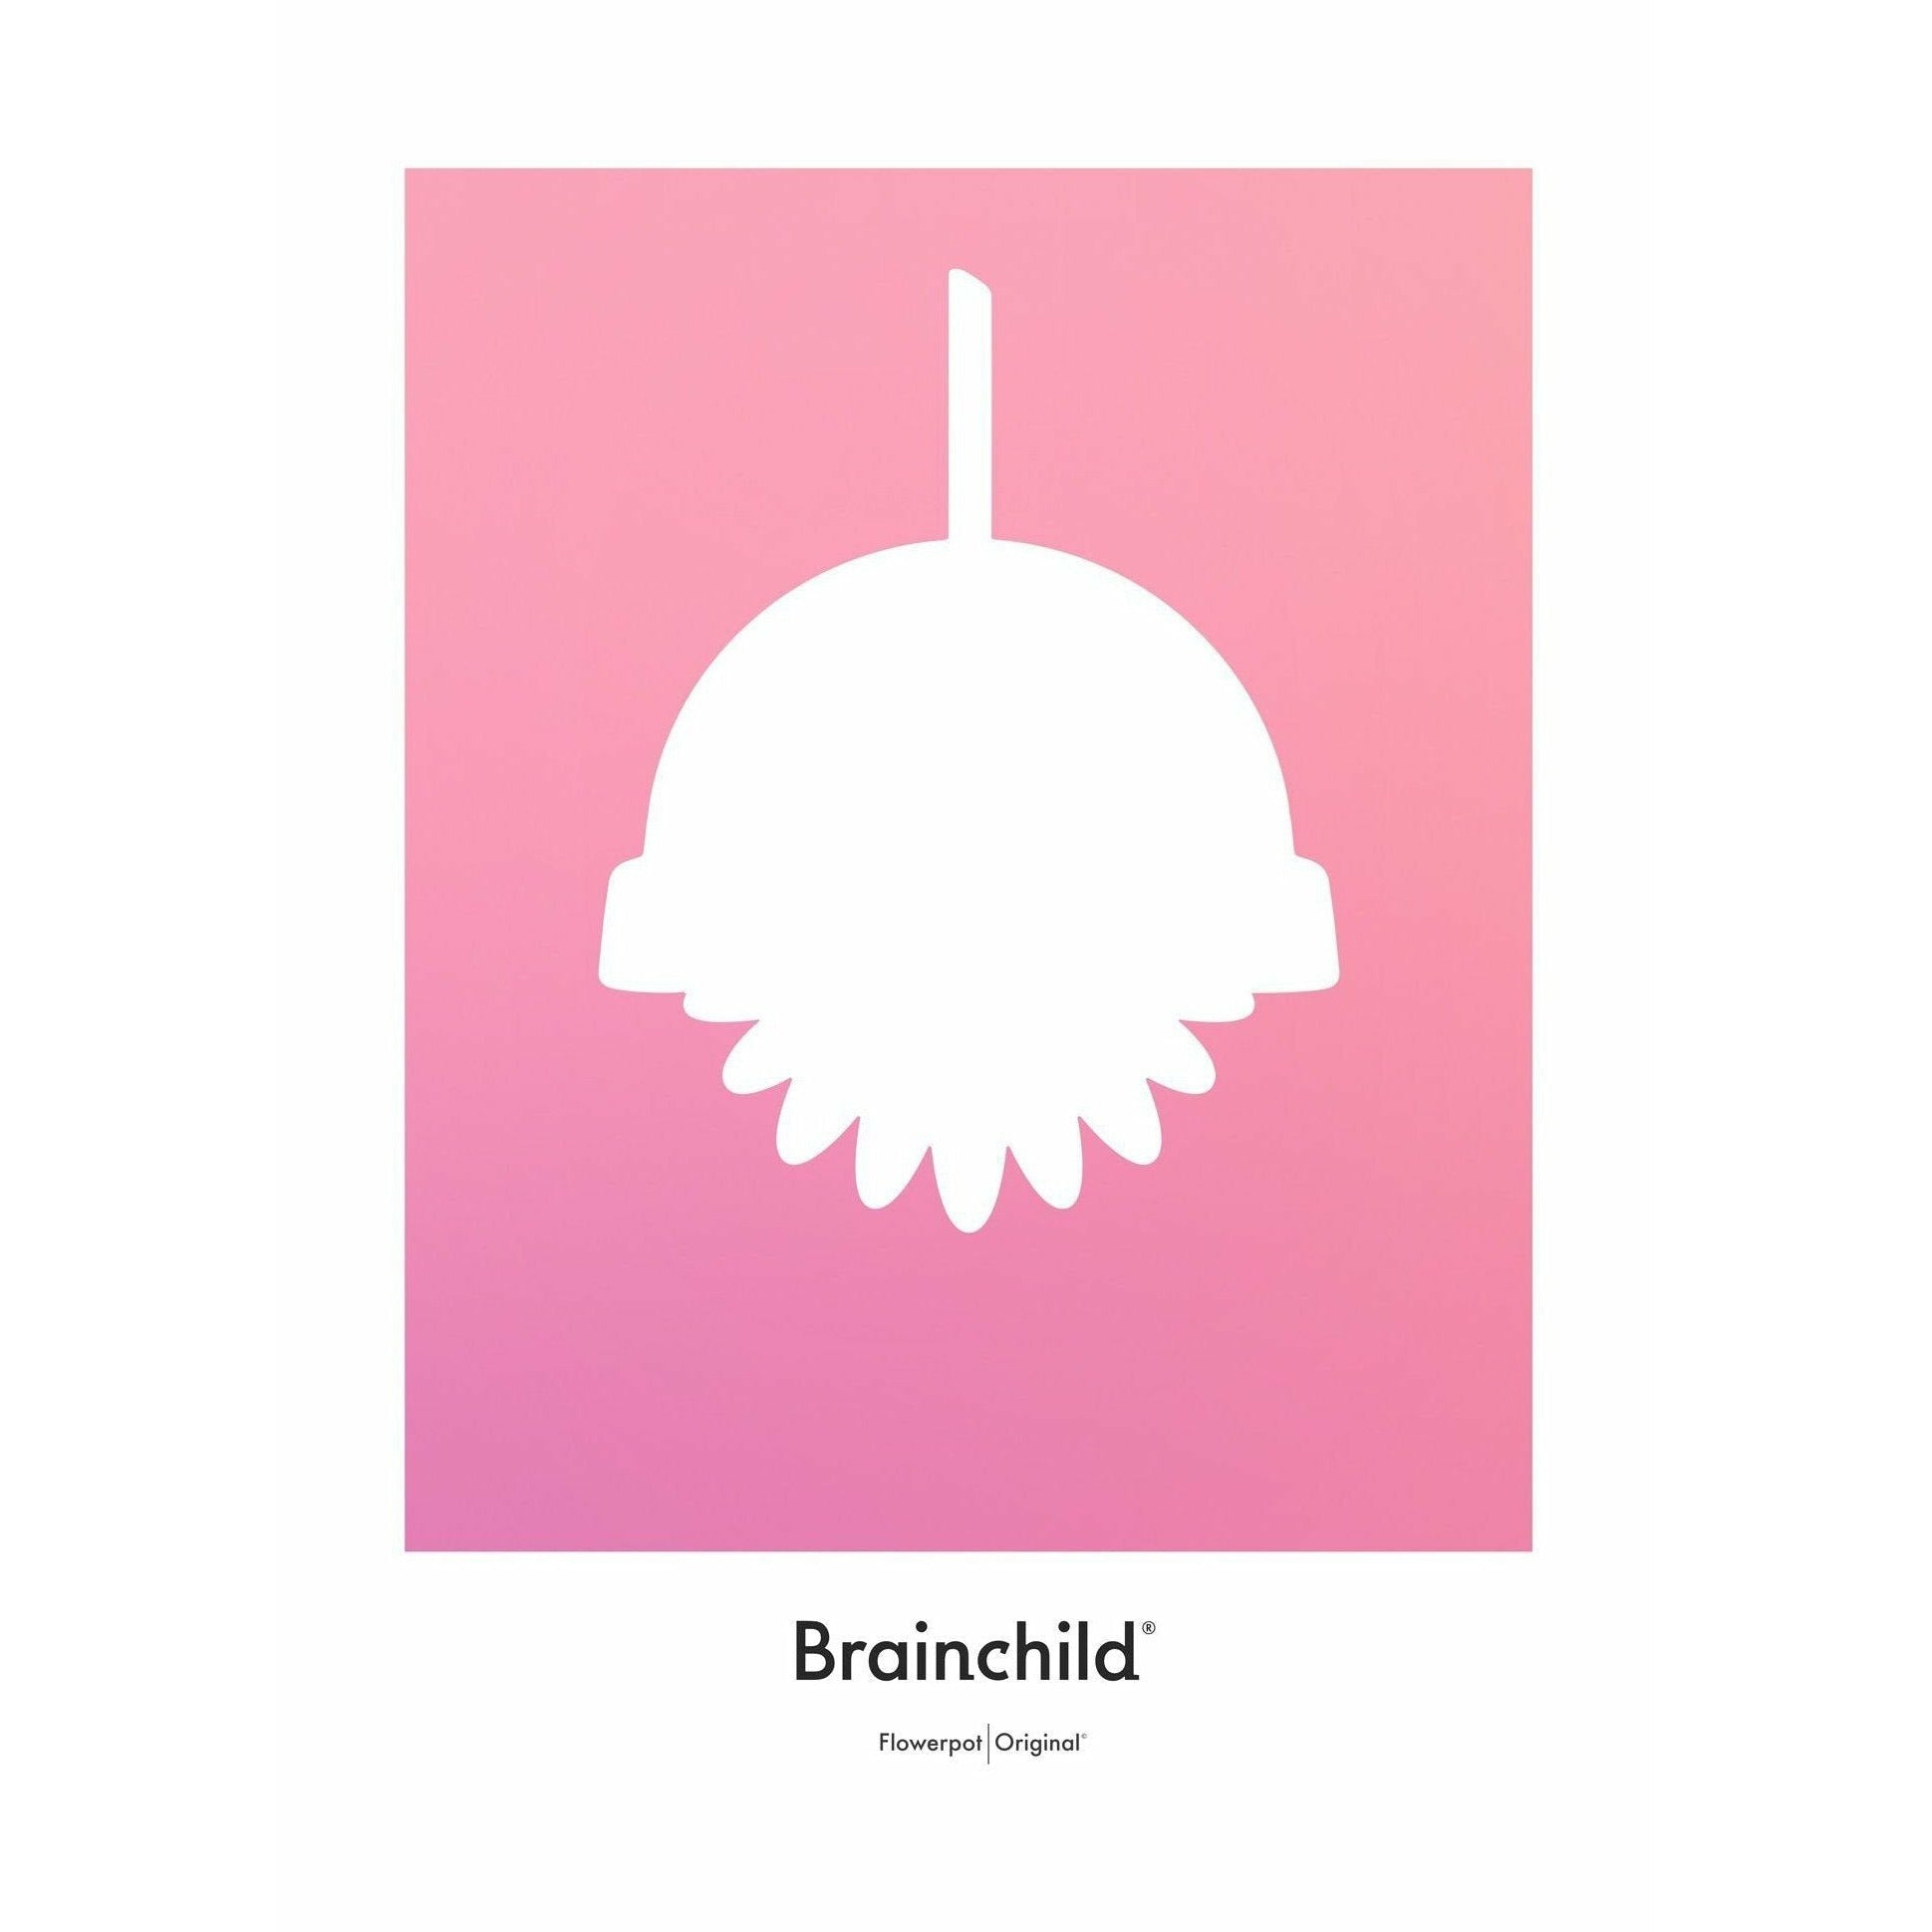 Plakát ikon designu Brainchild Flowerpot bez rámu A5, růžový